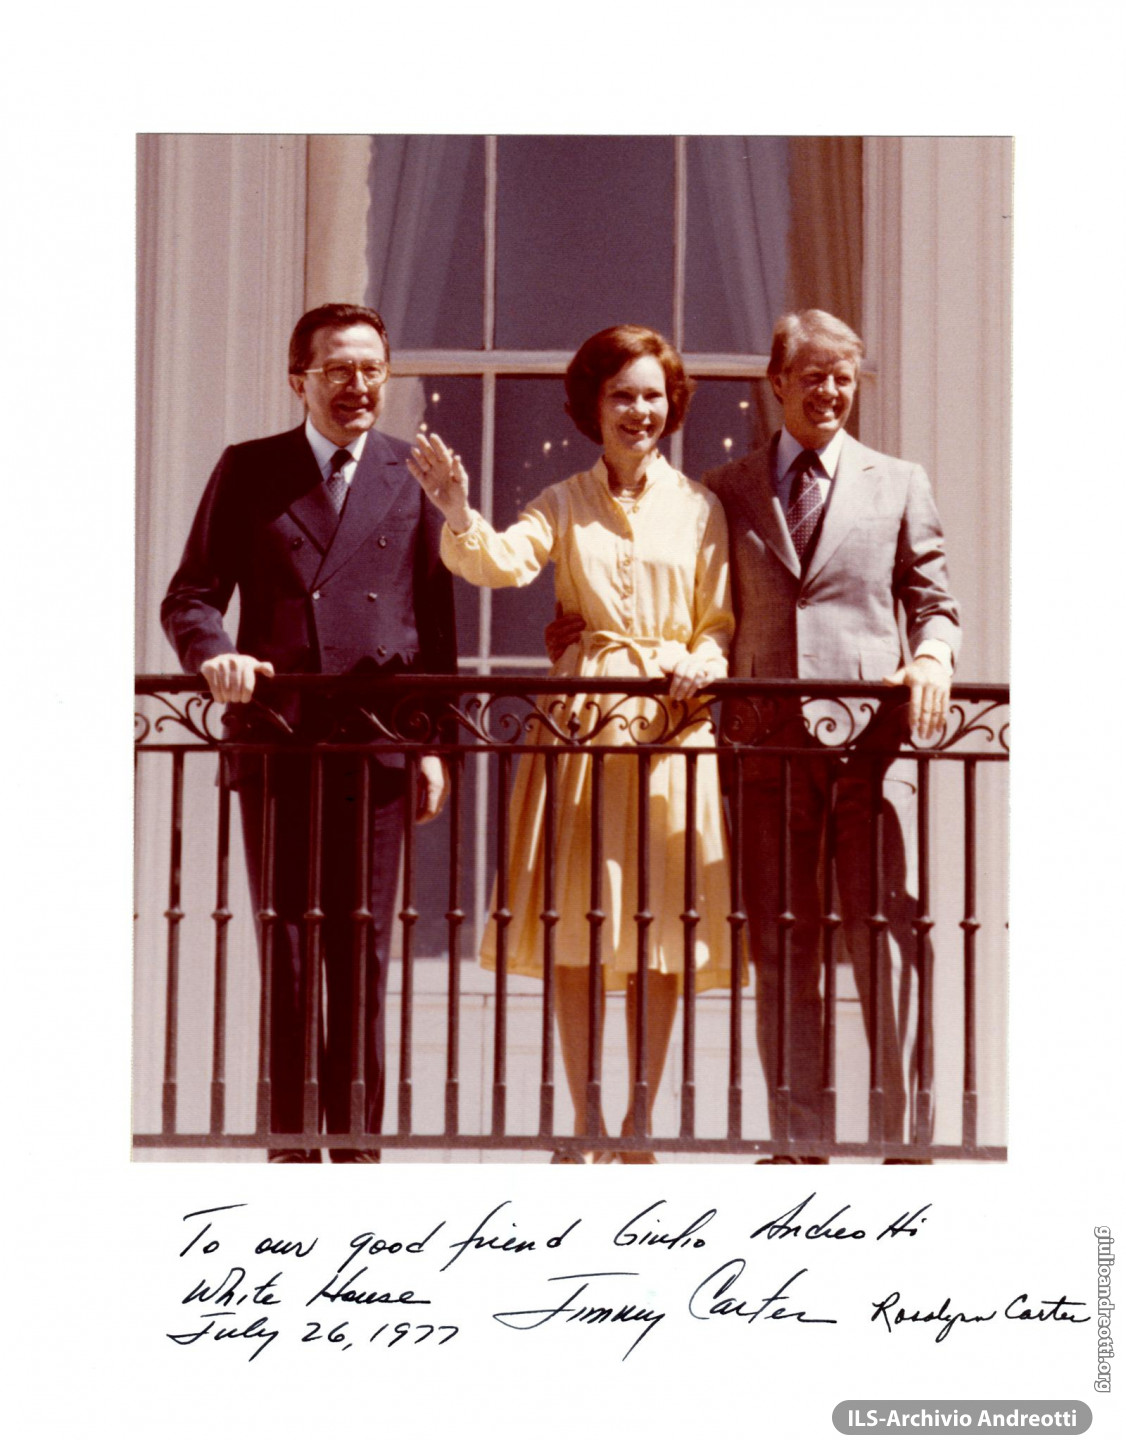 Foto con dedica di Jimmy e Rosalynn Carter in occasione della visita ufficiale di Andreotti al Presidente degli Stati Uniti il 26 luglio 1977